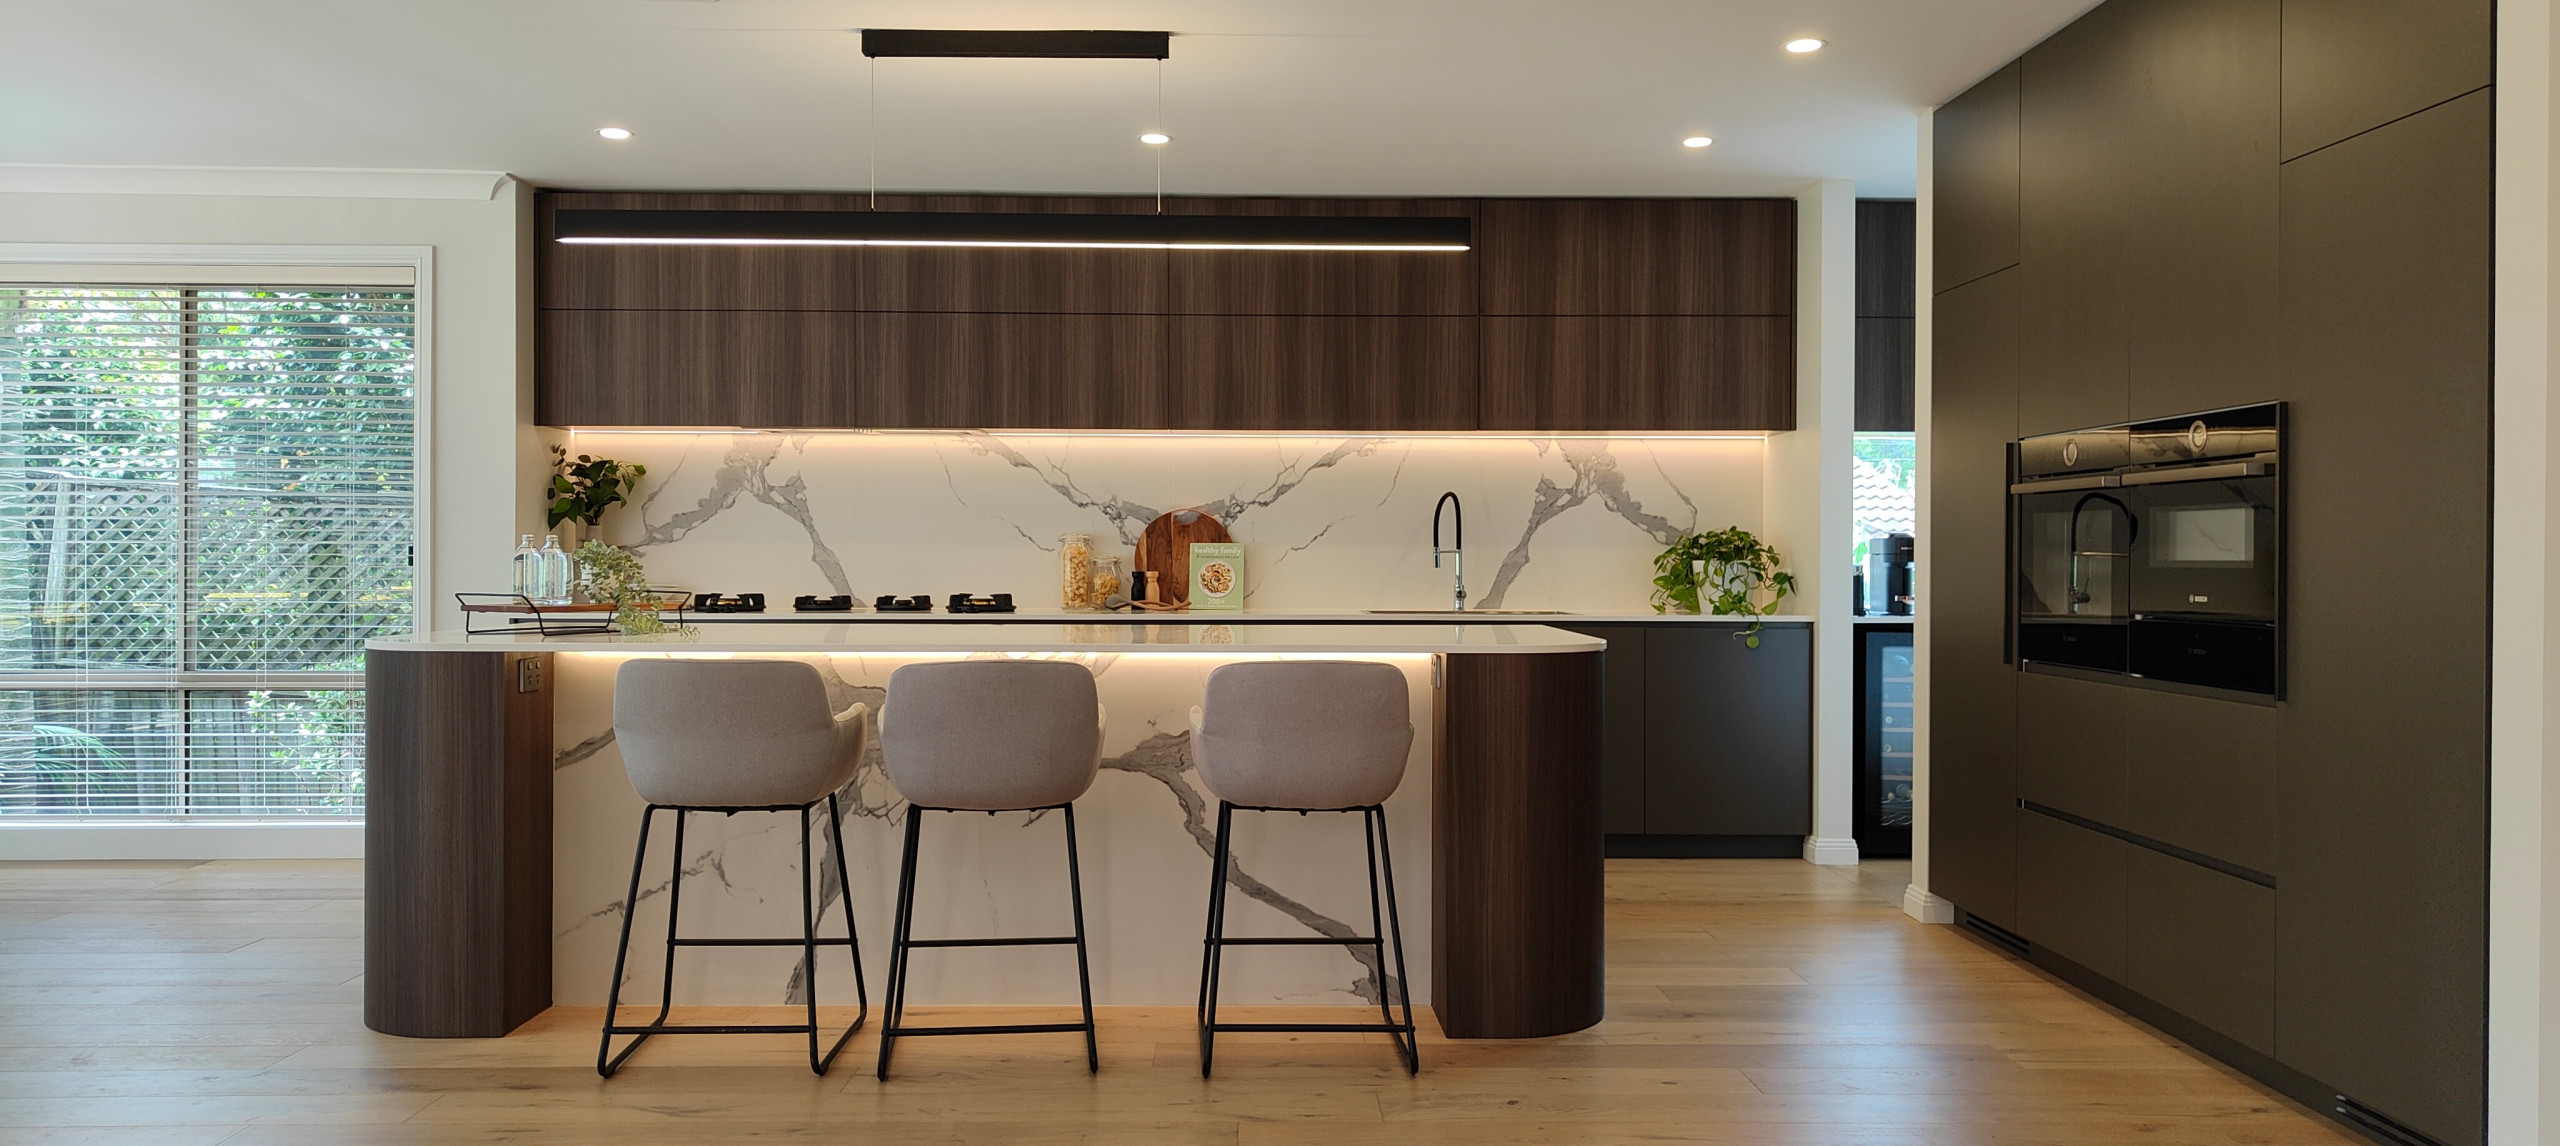 Epping luxury modern kitchen